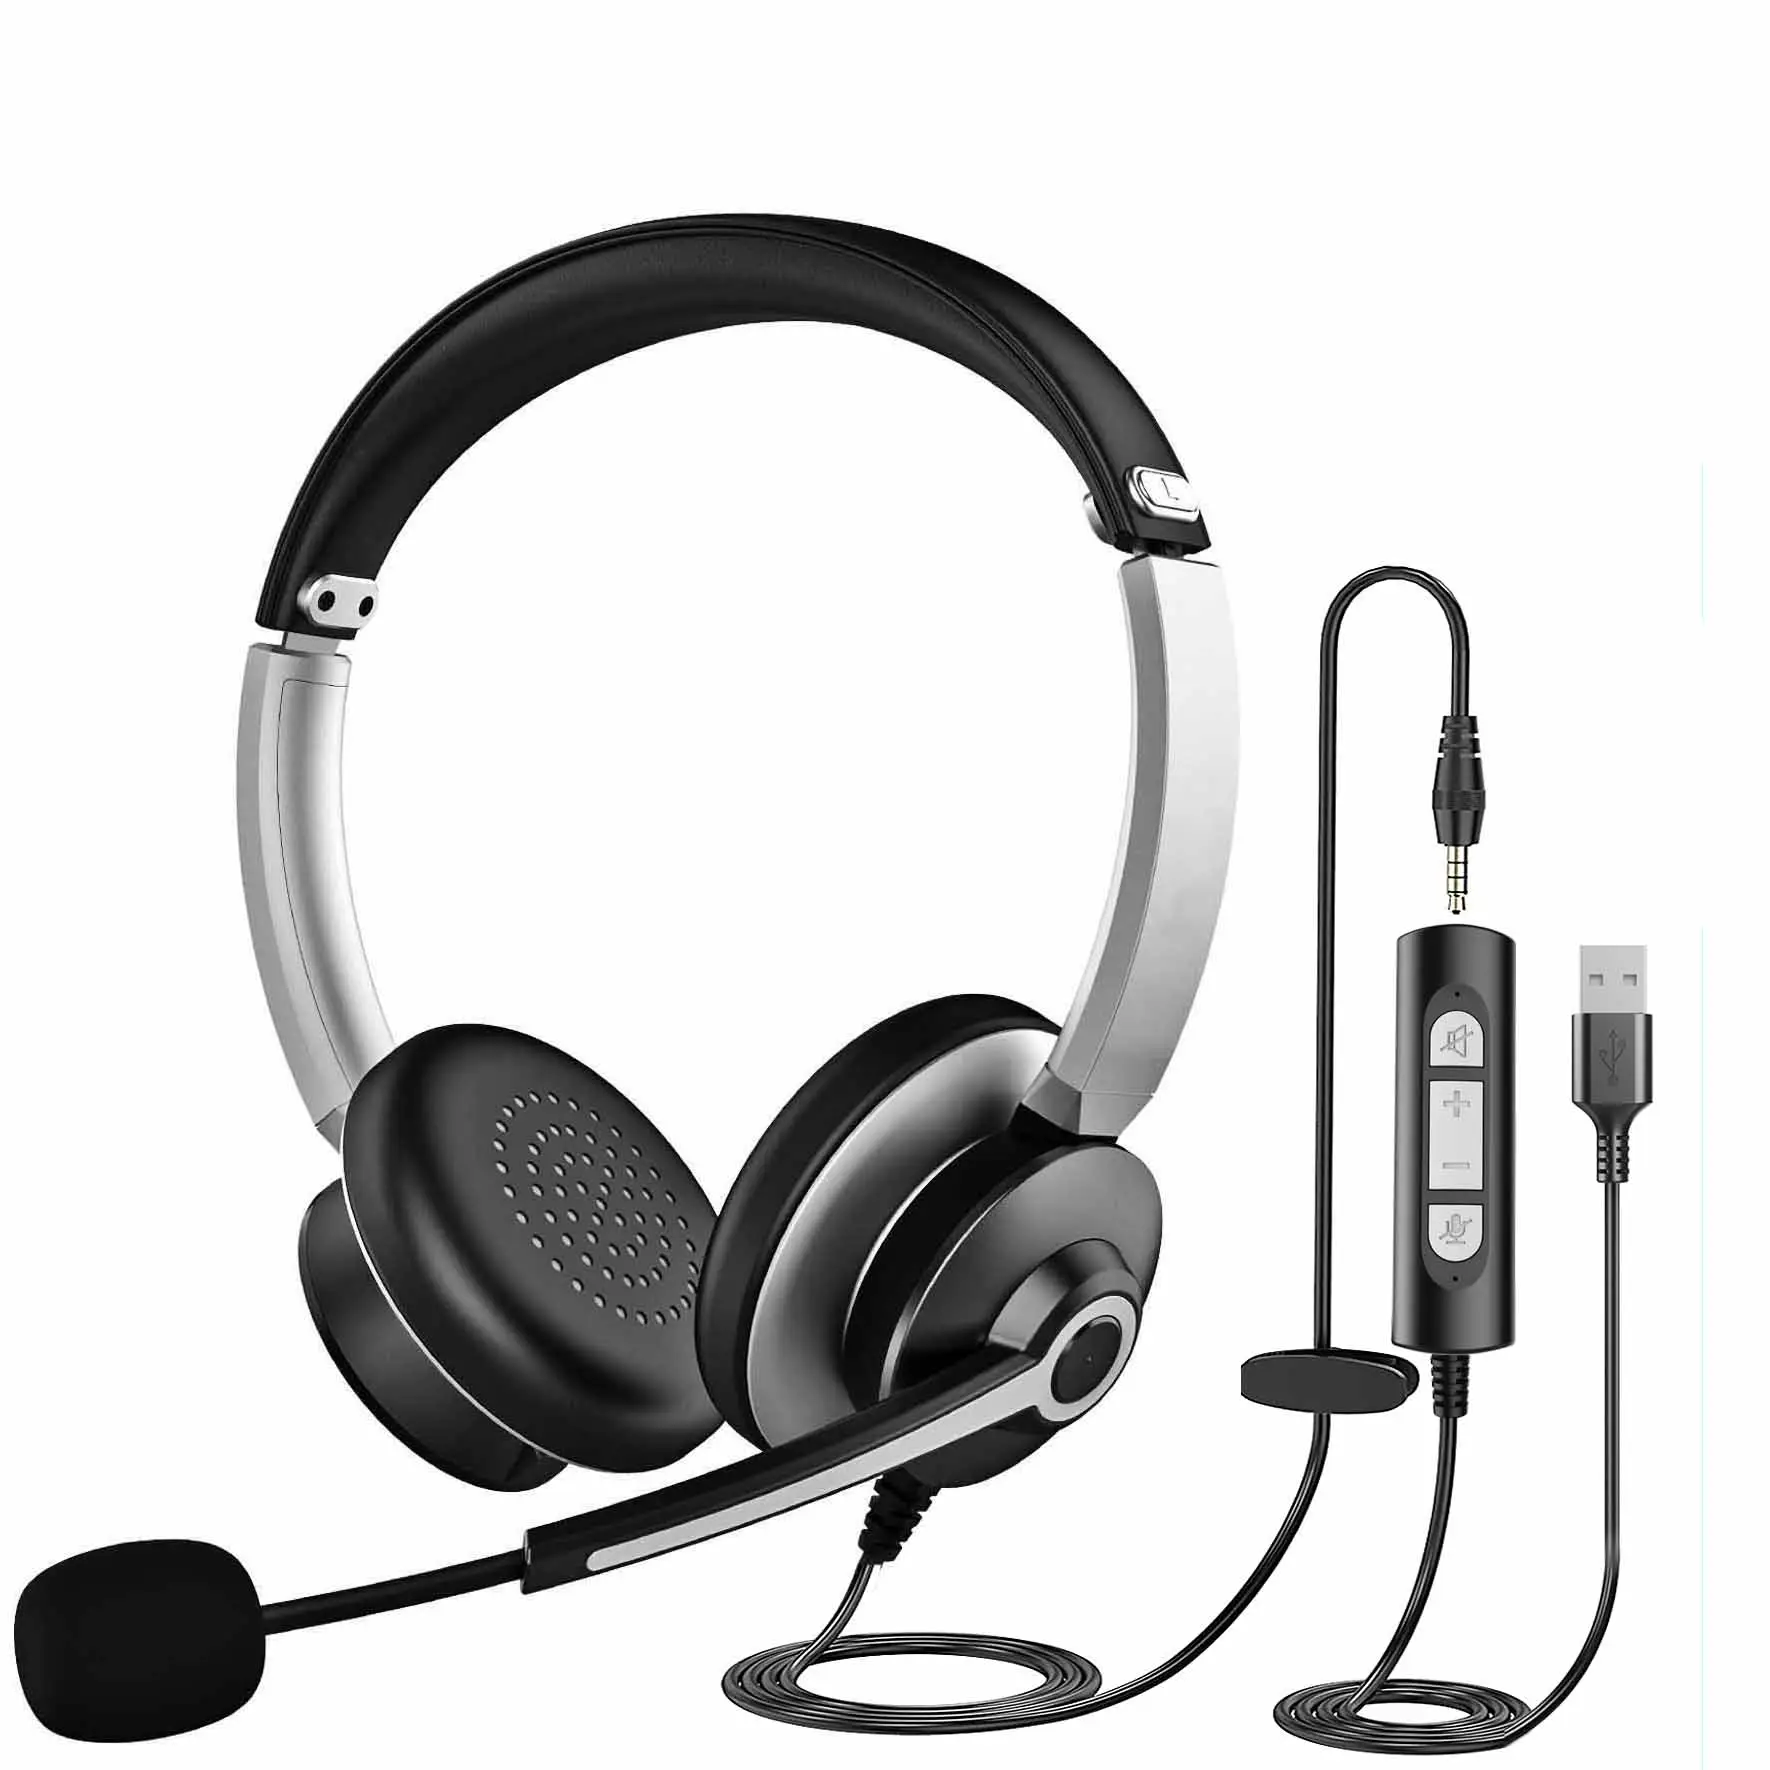 Fone de ouvido com fio para computador, conector de 3,5 mm, zoom, skype, call center, fone de ouvido com microfone para Android e Windows